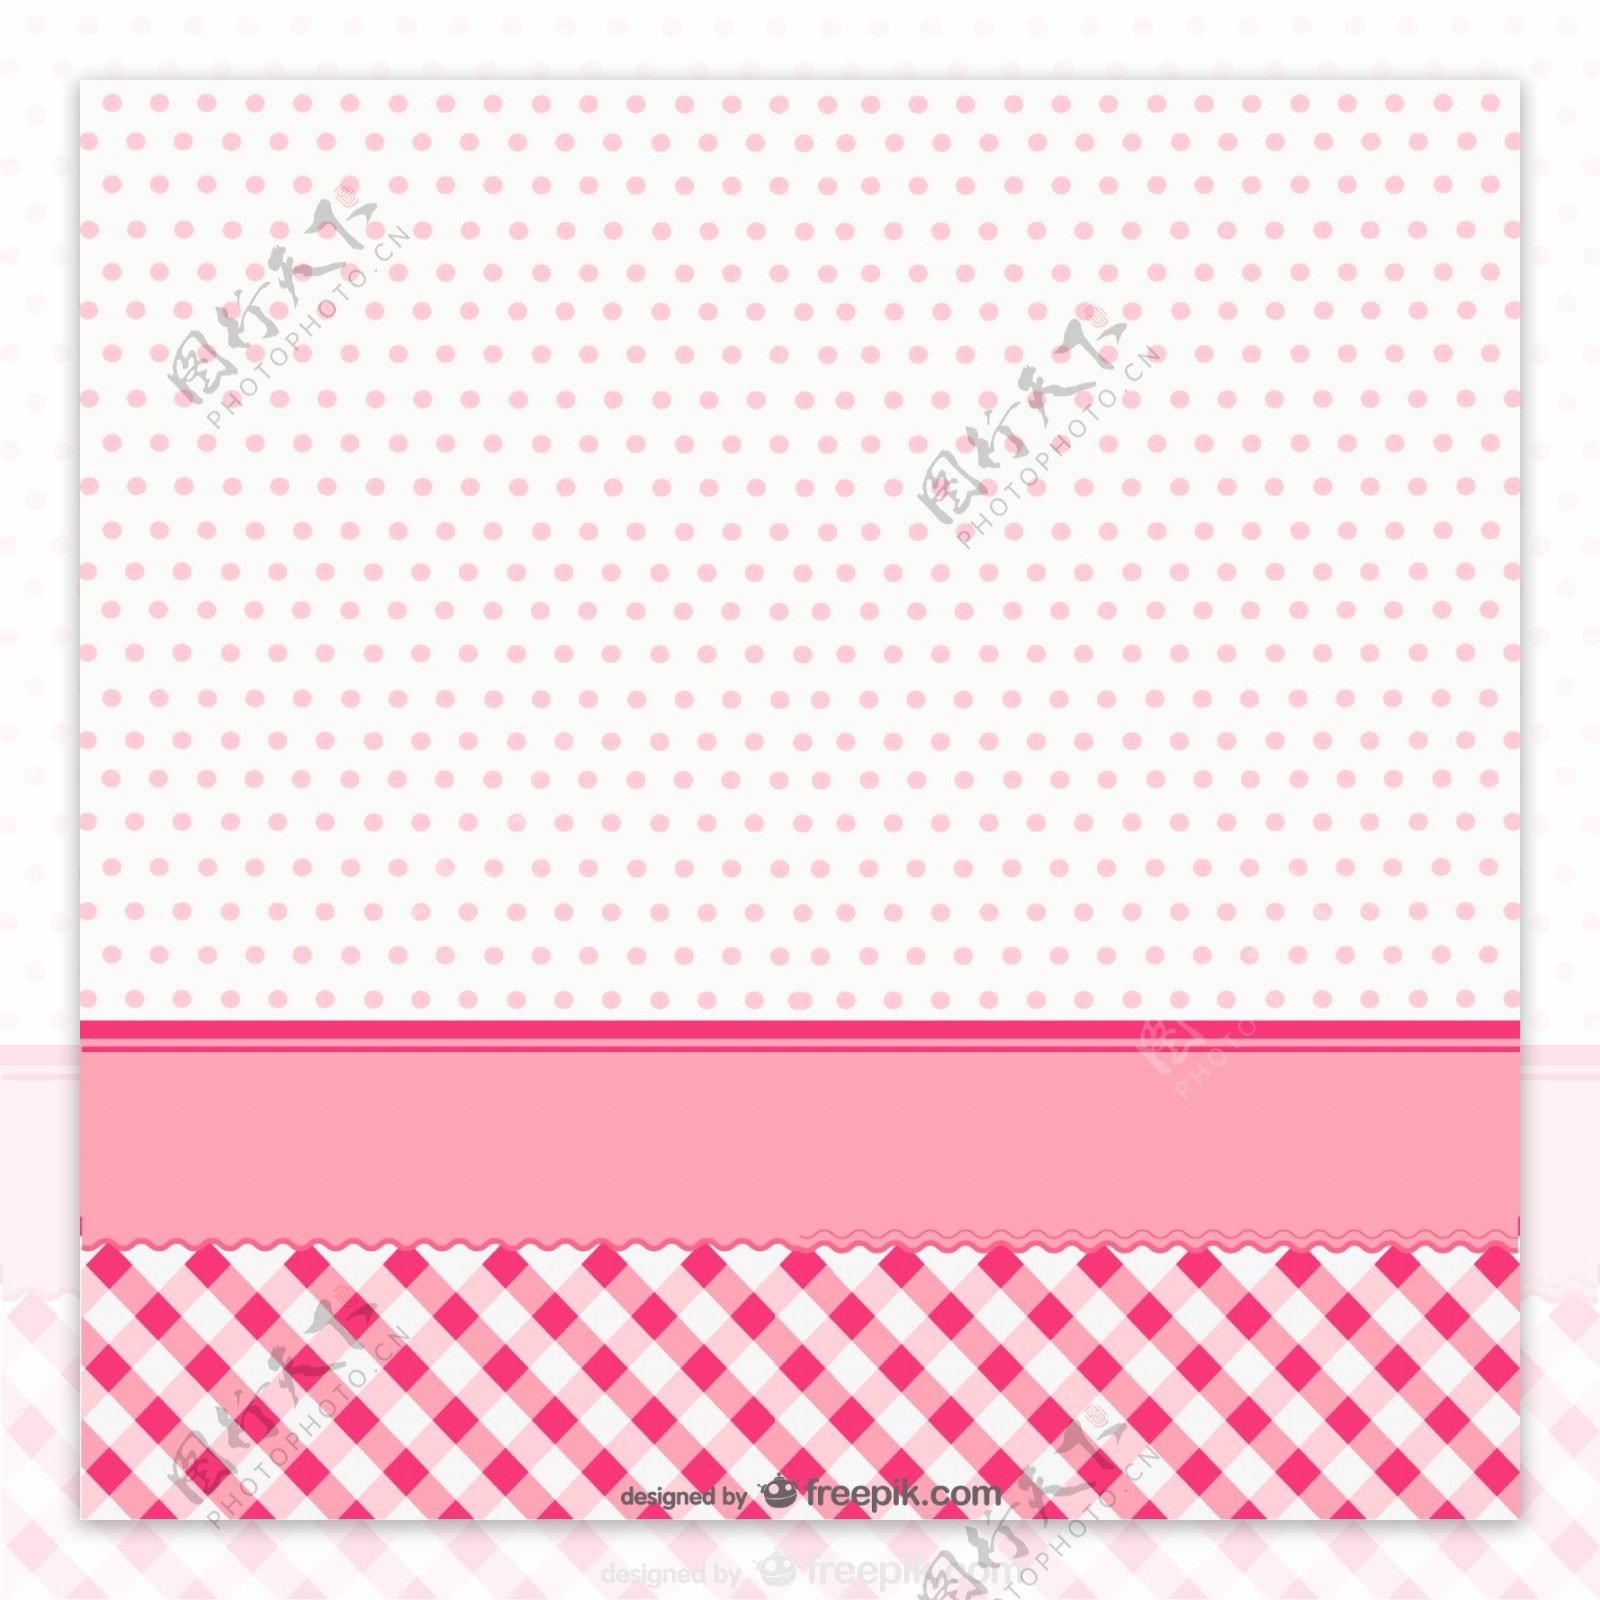 粉色水玉点与格子背景矢量素材图片